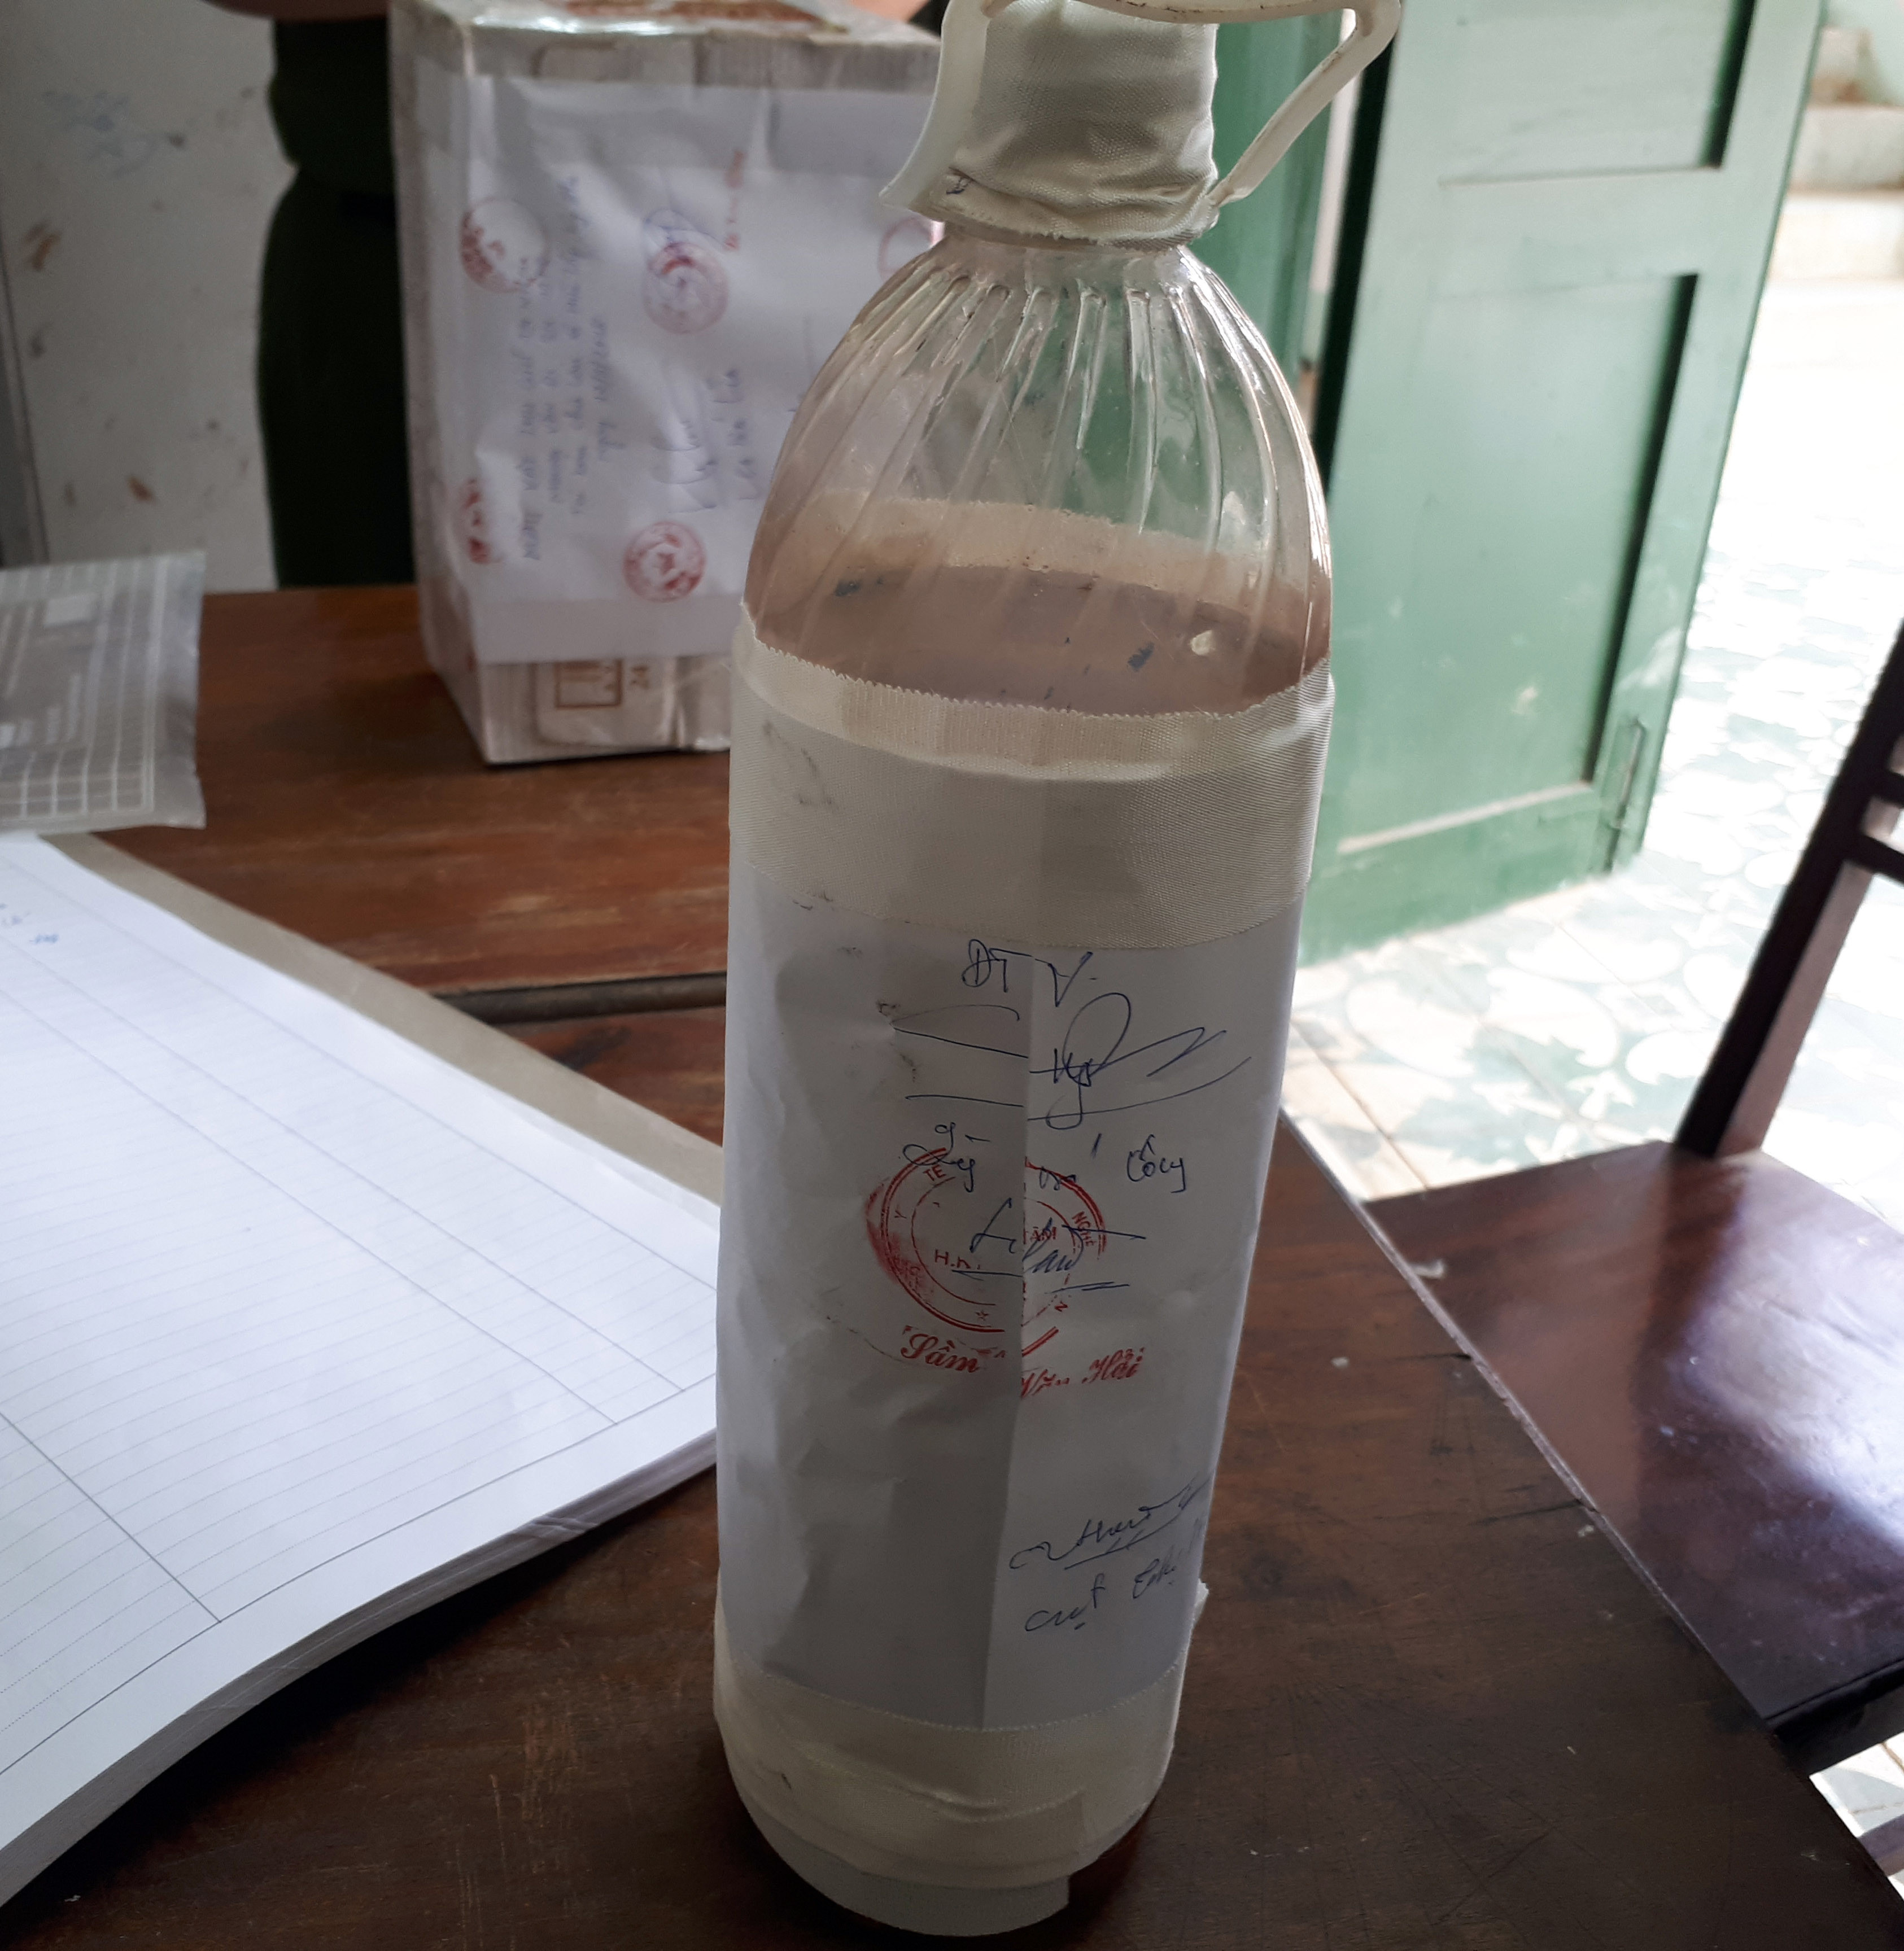 Chai rượu bằng nhựa được cho là nguyên nhân dẫn đến cái chết của 3 người ở bản Chà Lắn, xã Hữu Lập, huyện Kỳ Sơn. Ảnh: PV